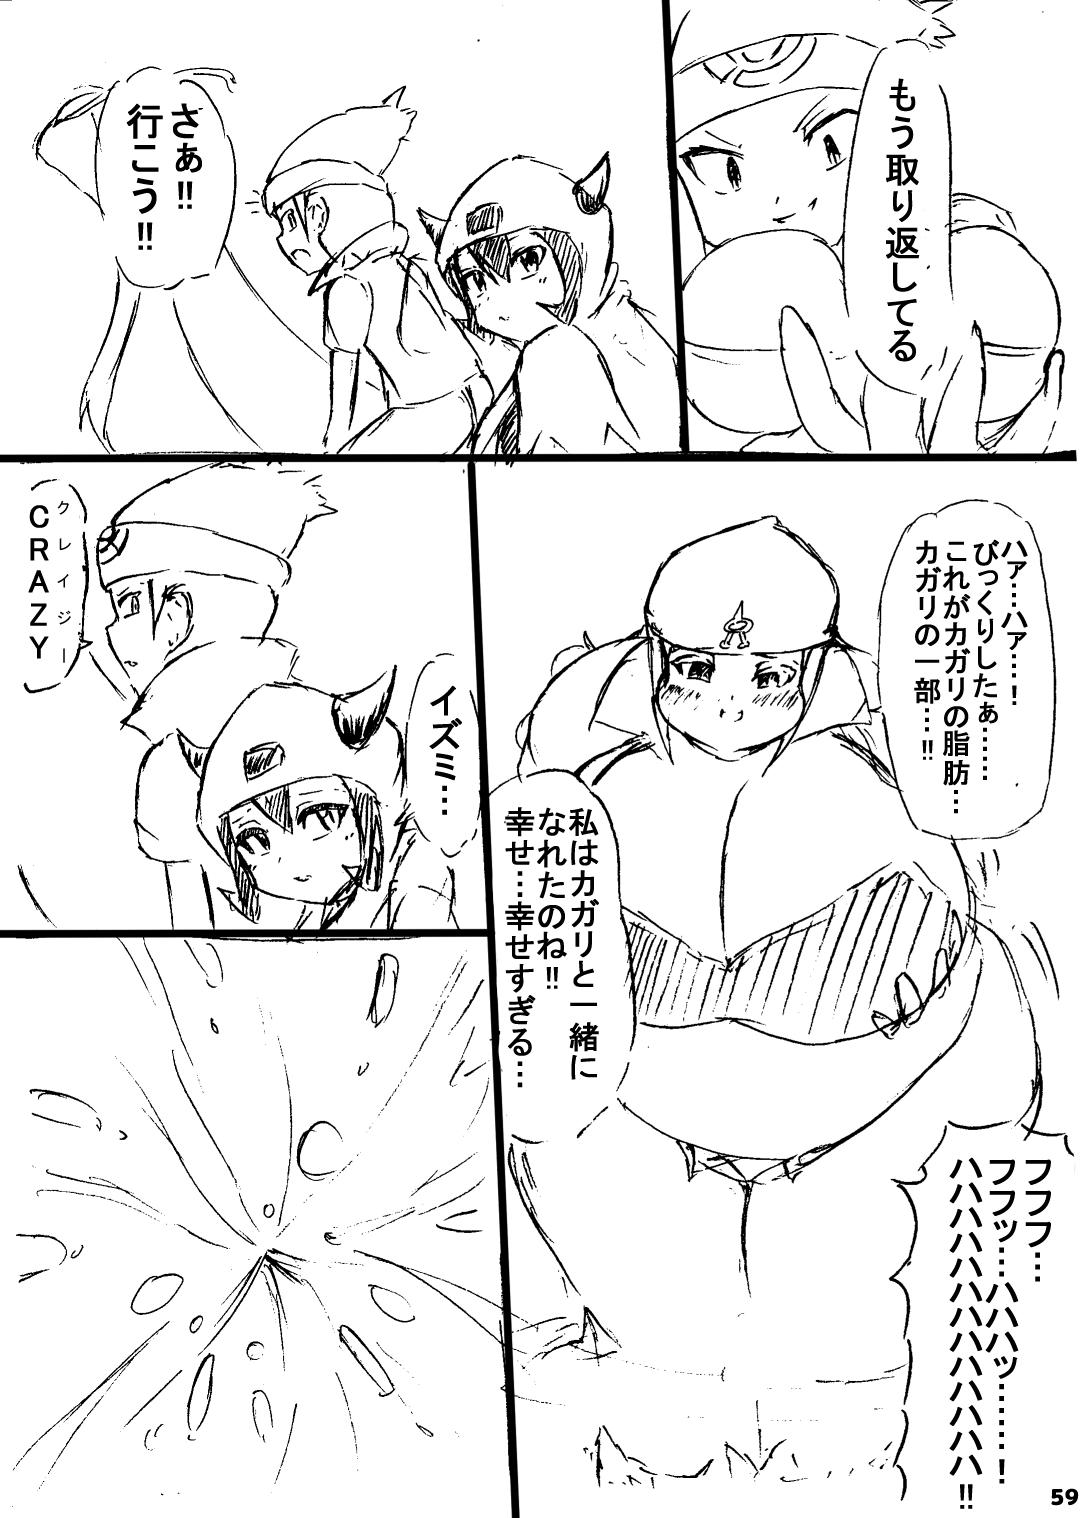 ポケスペカガリ肥満化漫画 57